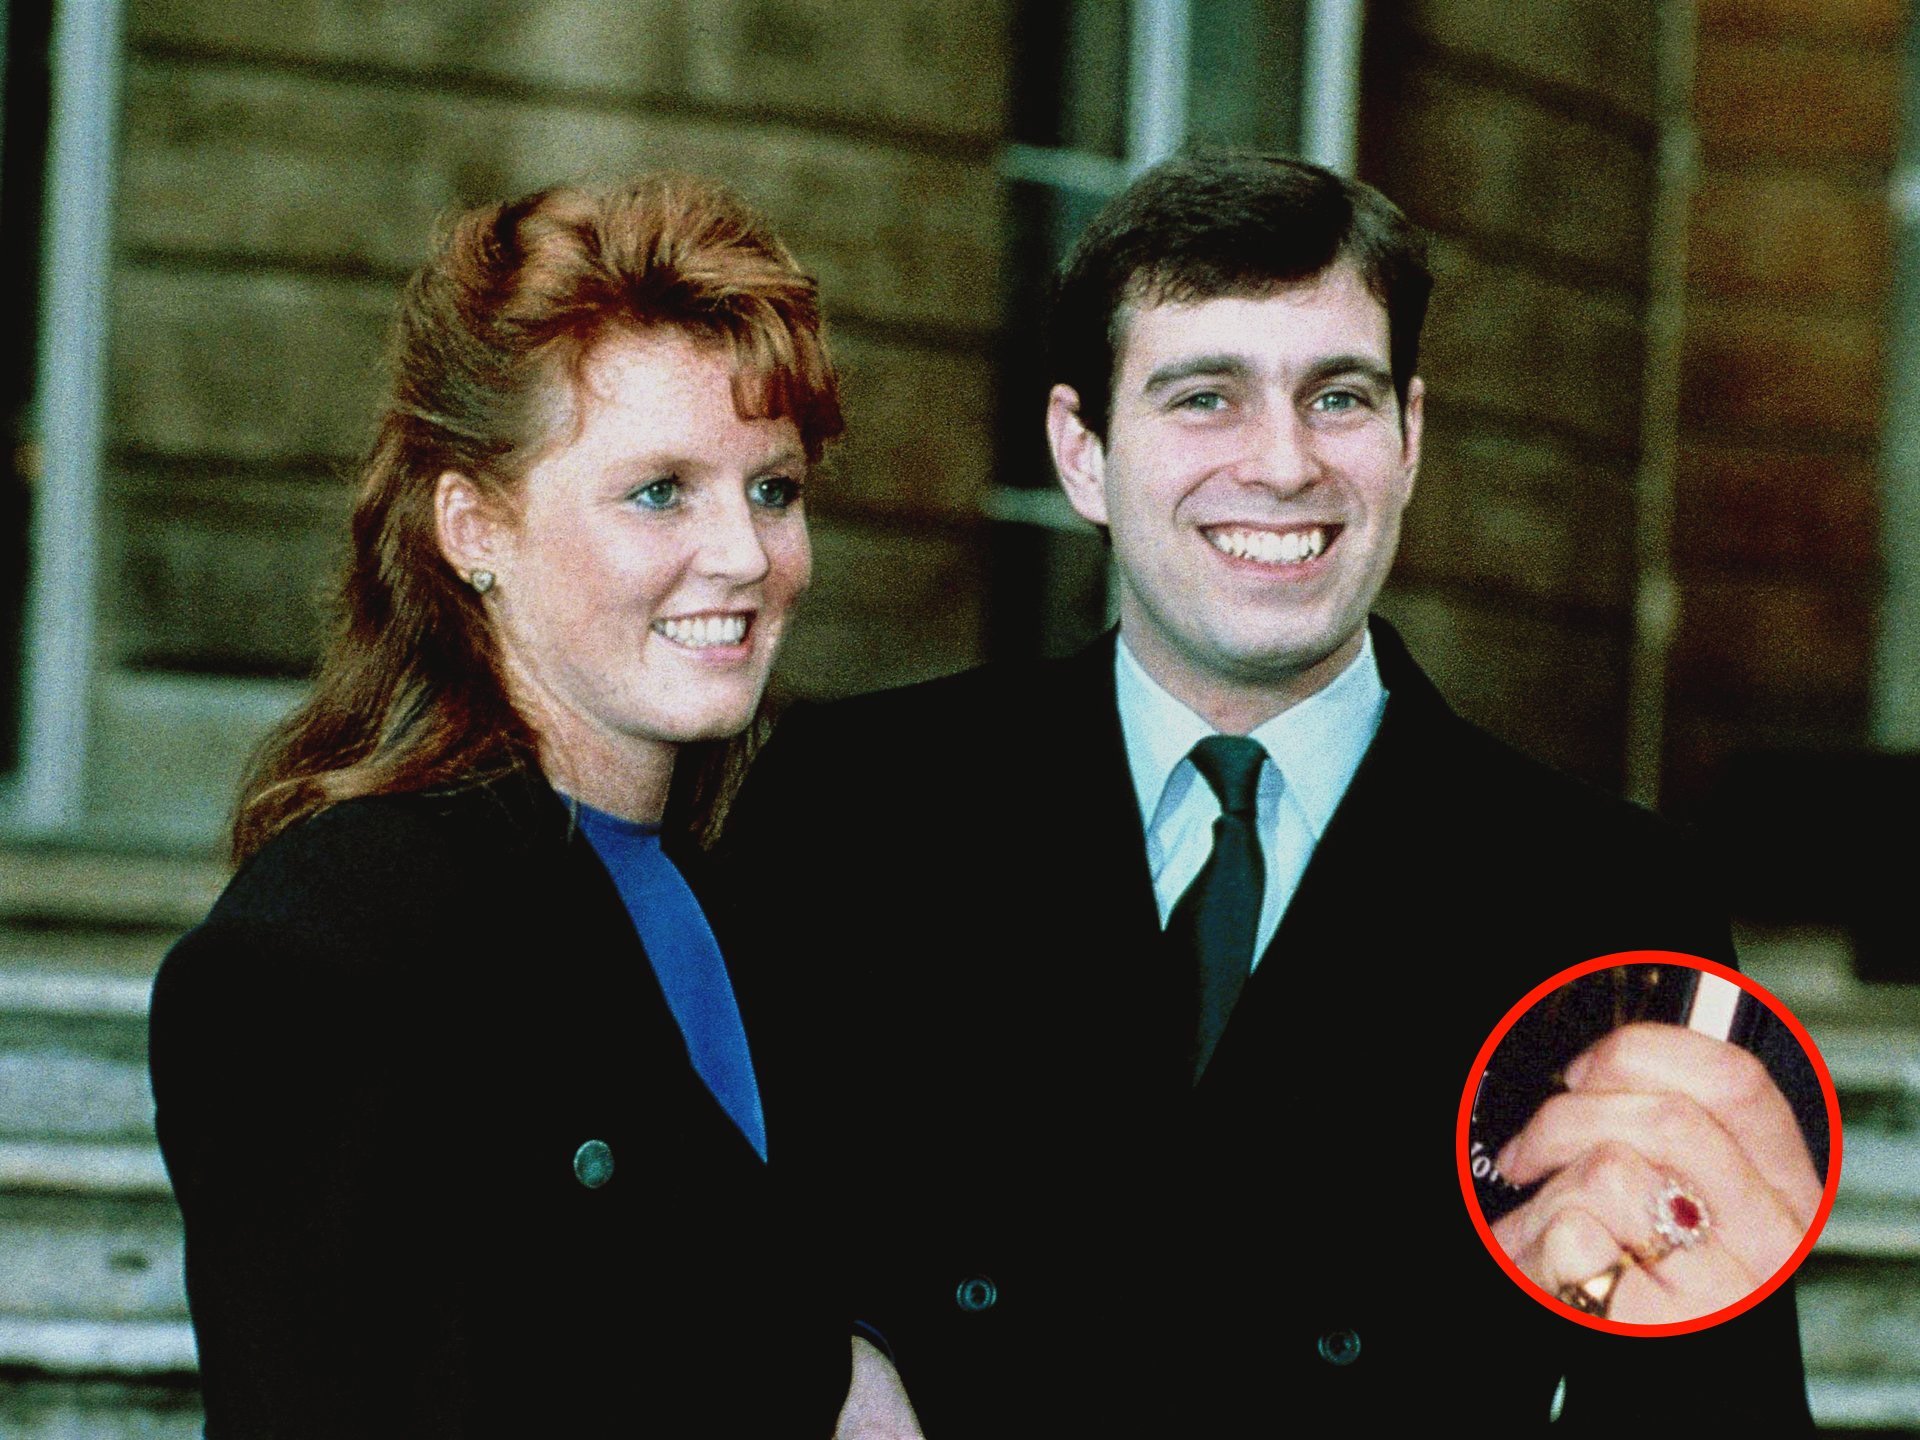   Chiếc nhẫn bằng vàng trắng, ở giữa có viên ruby lớn hình oval, xung quanh là 10 viên kim cương nhỏ. Ảnh chụp Hoàng tử Andrew và Công nương Sarah Ferguson tại Điện Buckingham ngày 19/3/1986, sau khi họ chính thức tuyên bố đính hôn – Nguồn: InStyle  